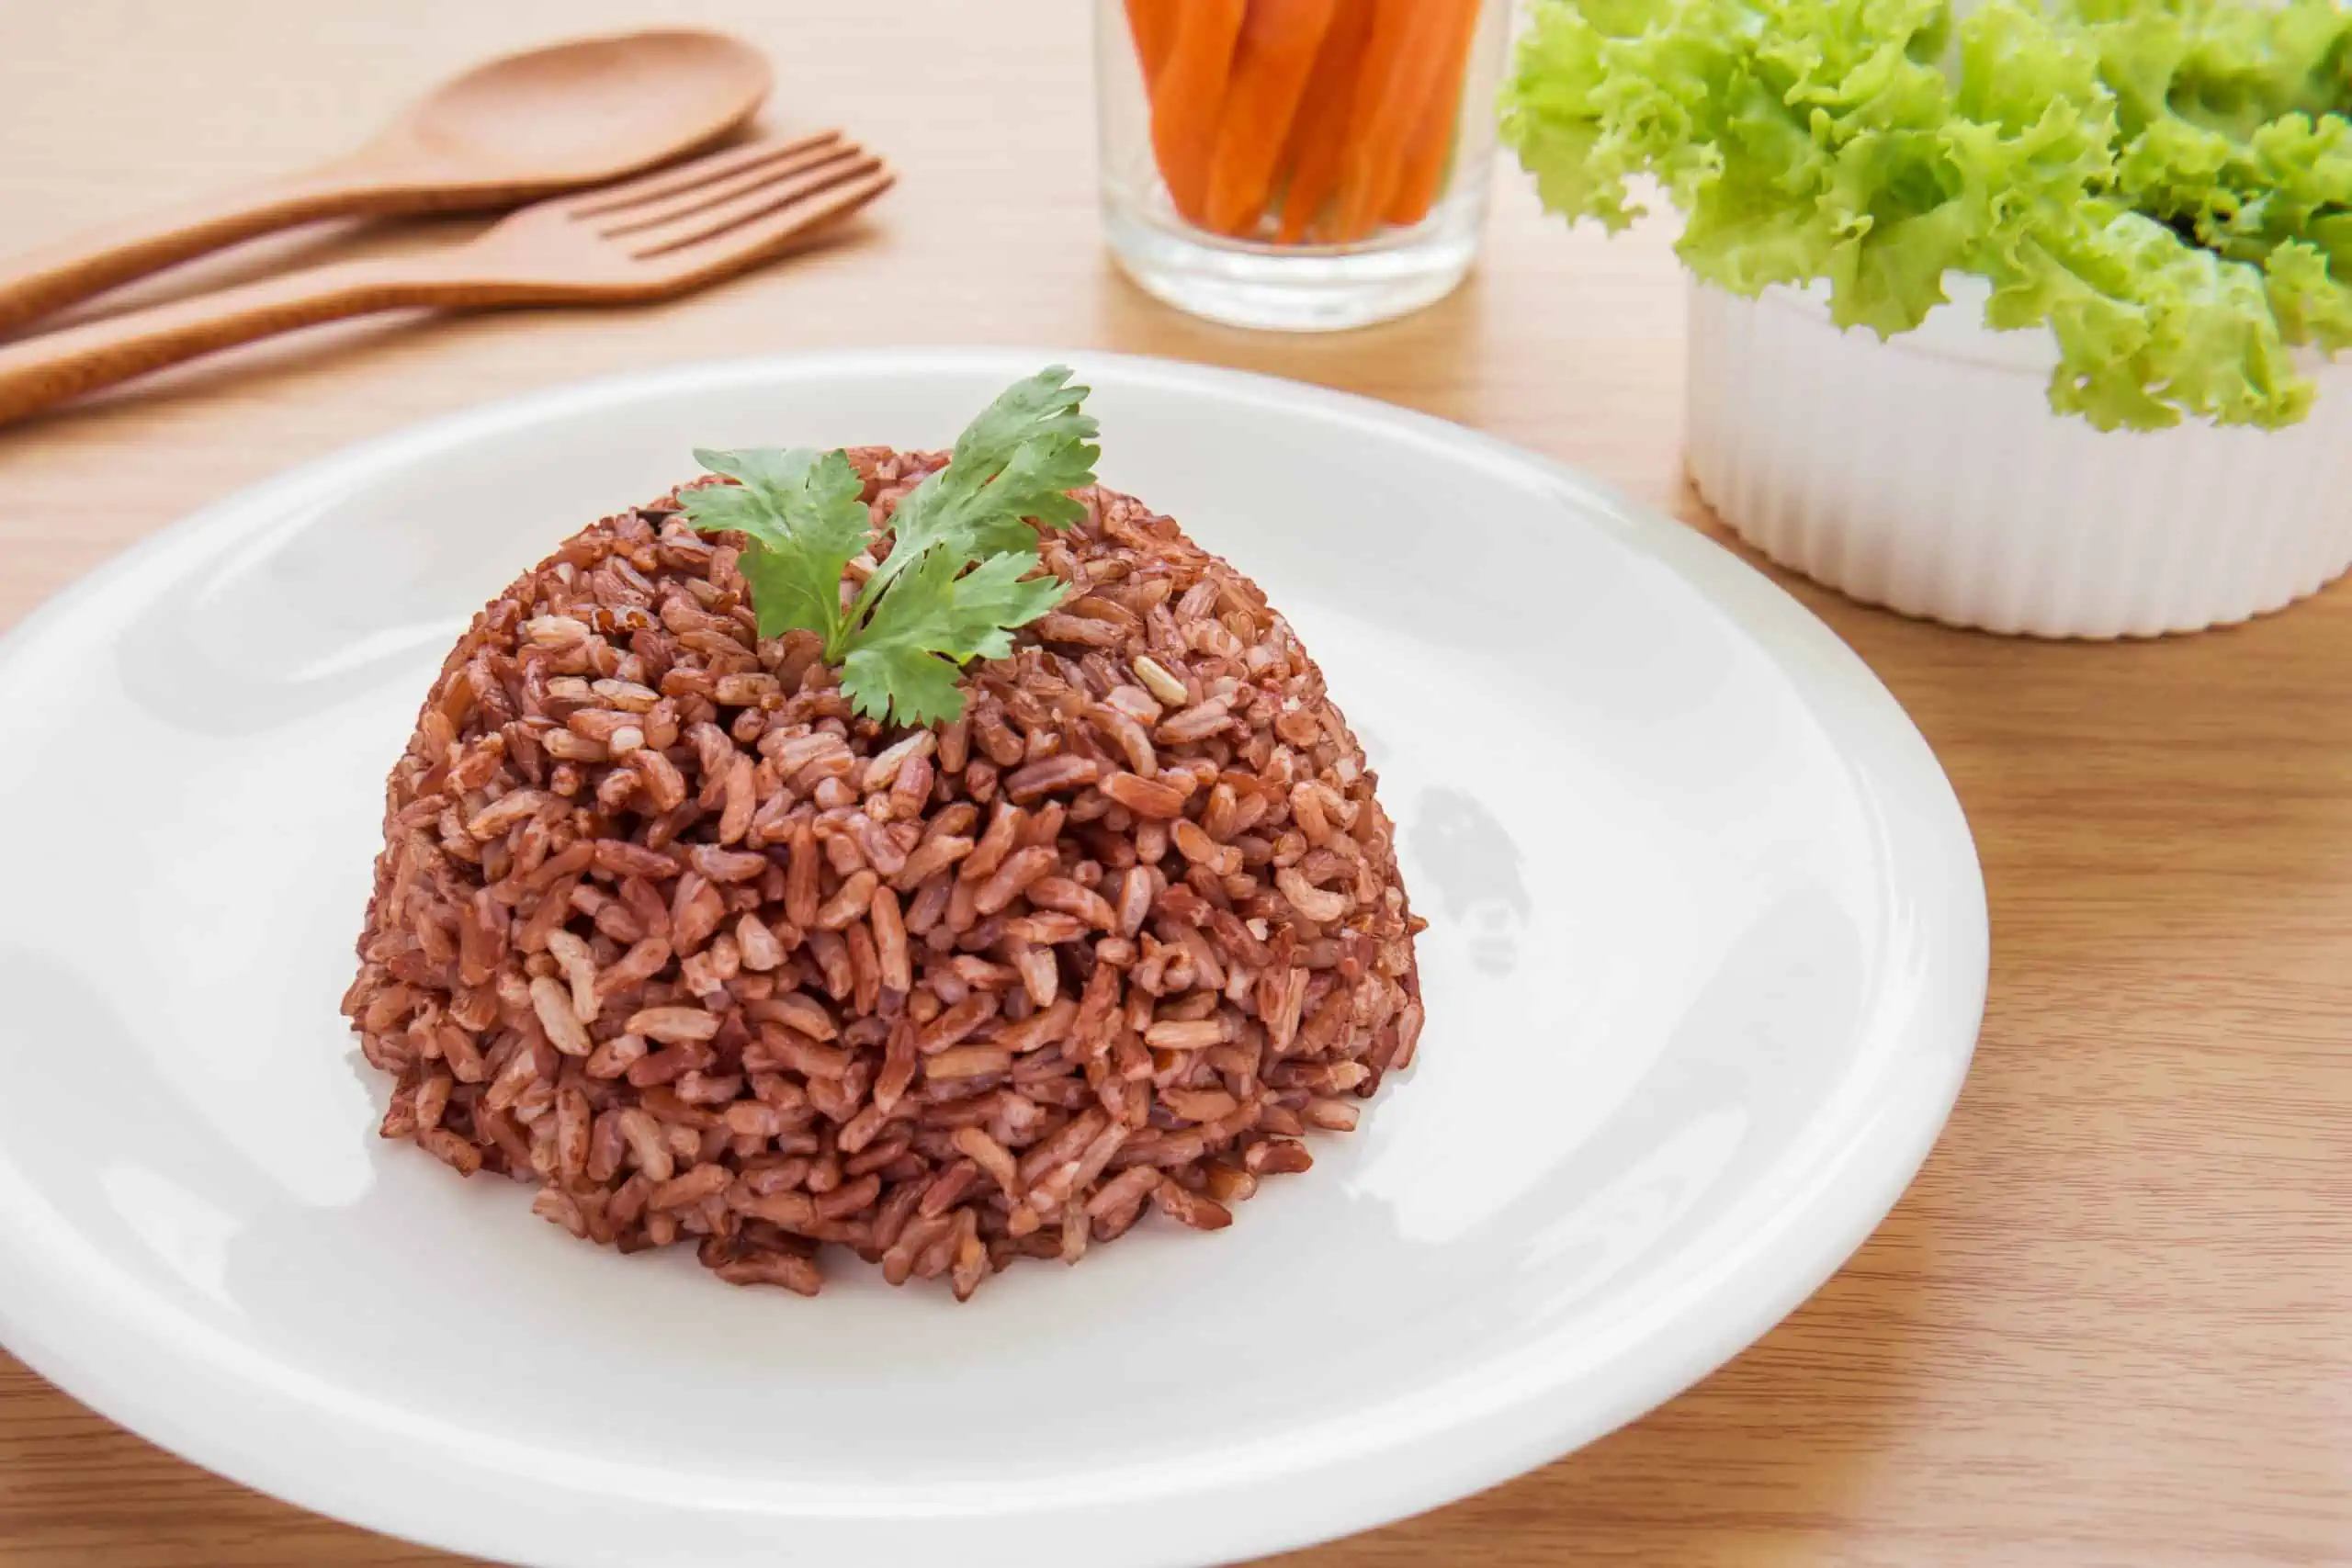 crvena riža kao lijek - kako crvena fermentirana riža djeluje na smanjenje kolesterola u krvi